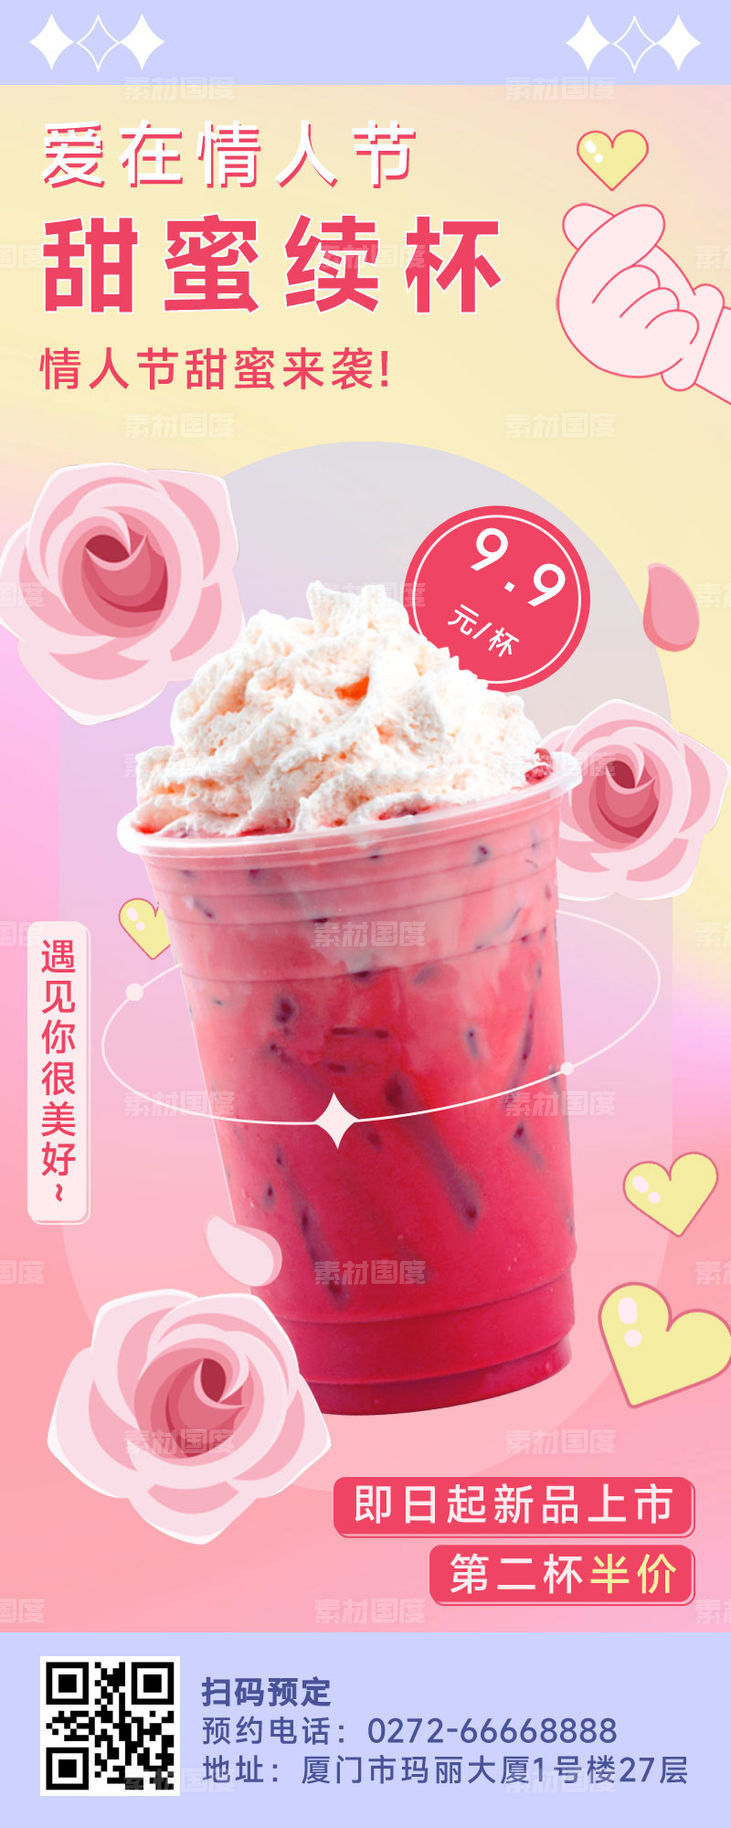 521情人节奶茶饮品营销文艺长图海报